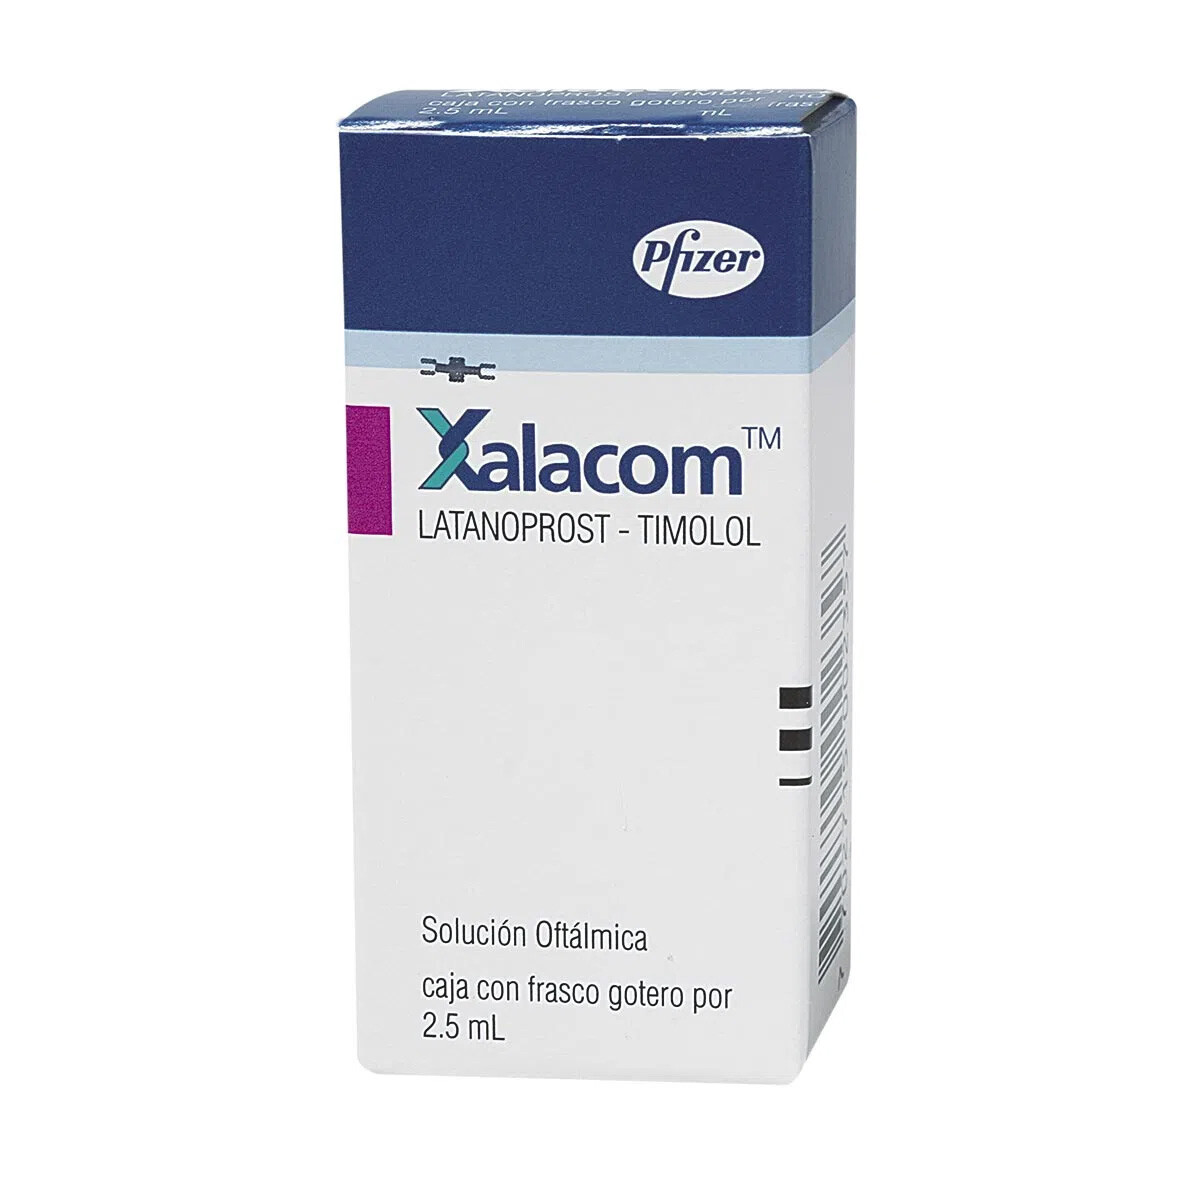 Xalacom Gts (Frio) x 3 ML 